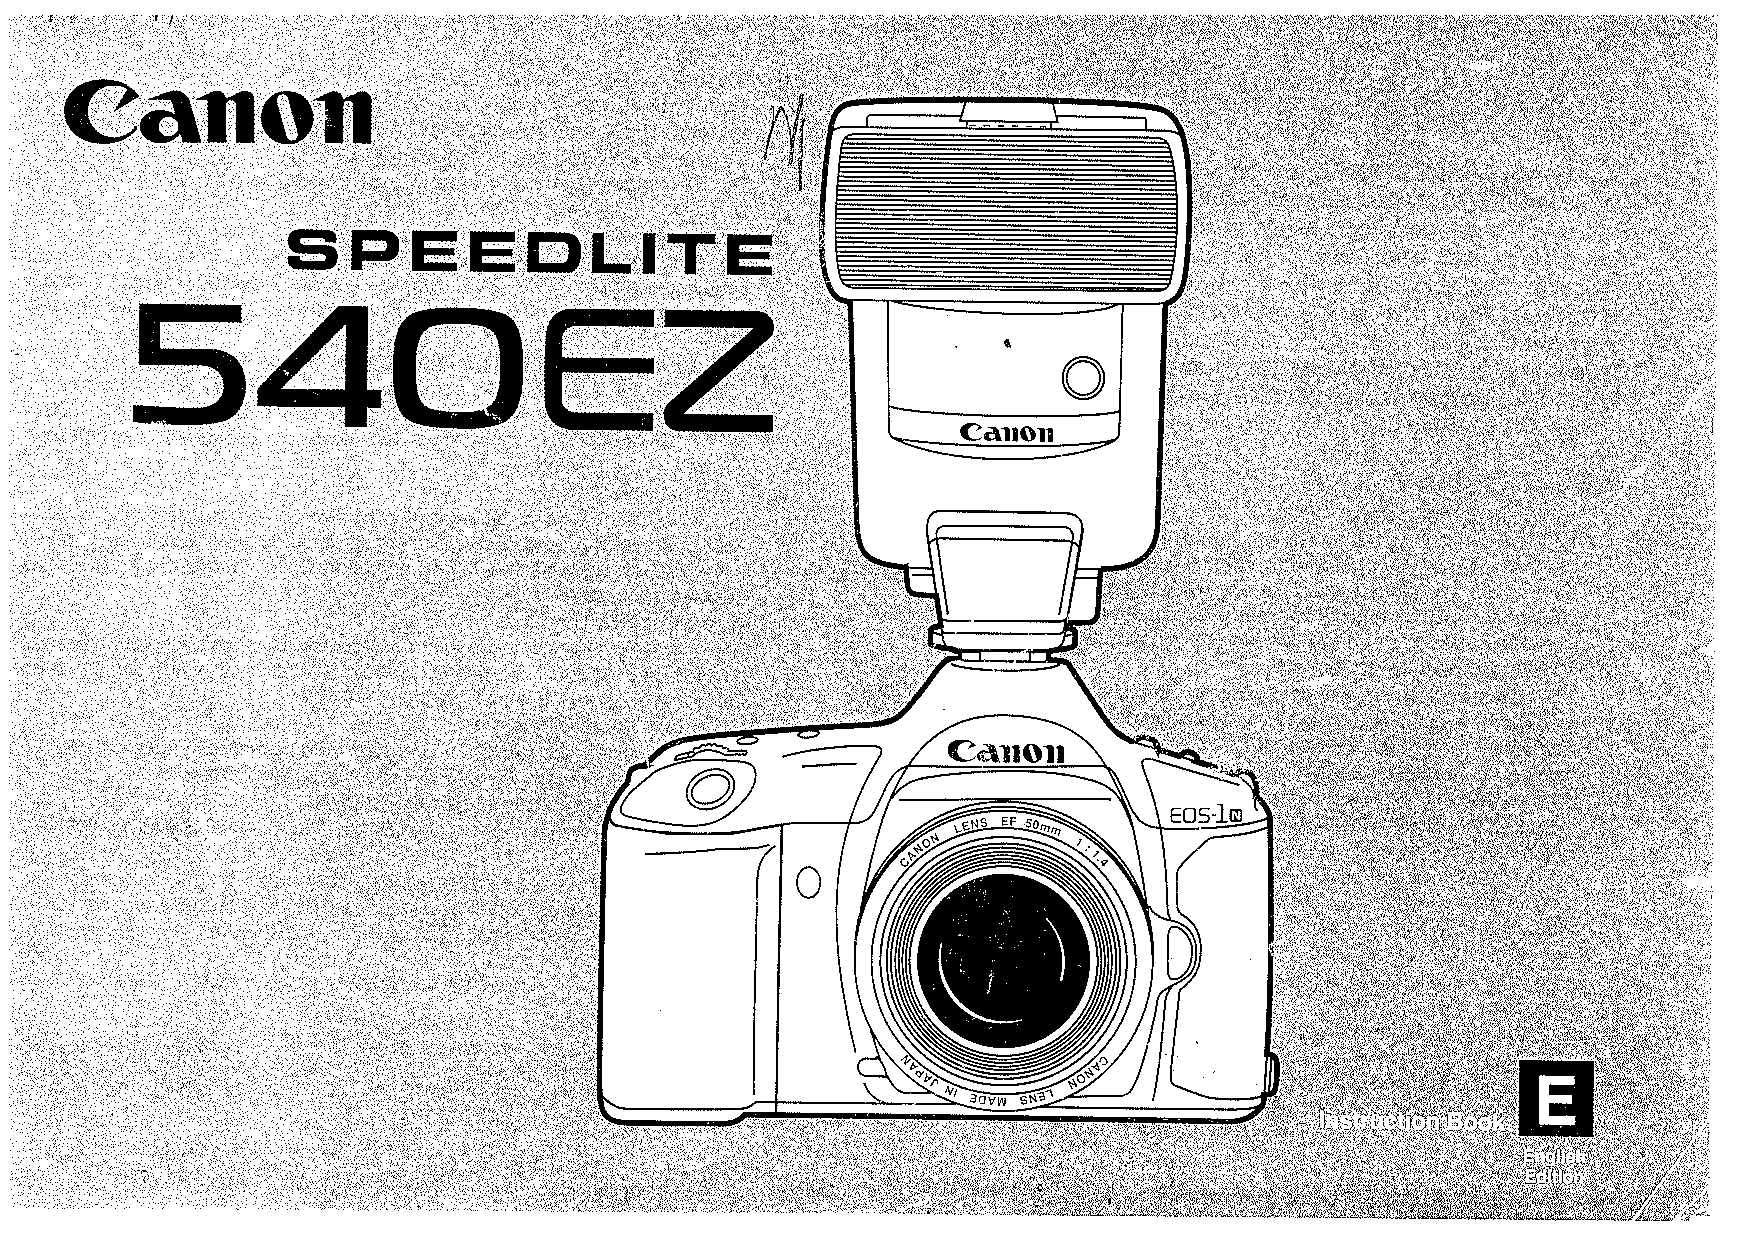 Canon 540EZ User Manual